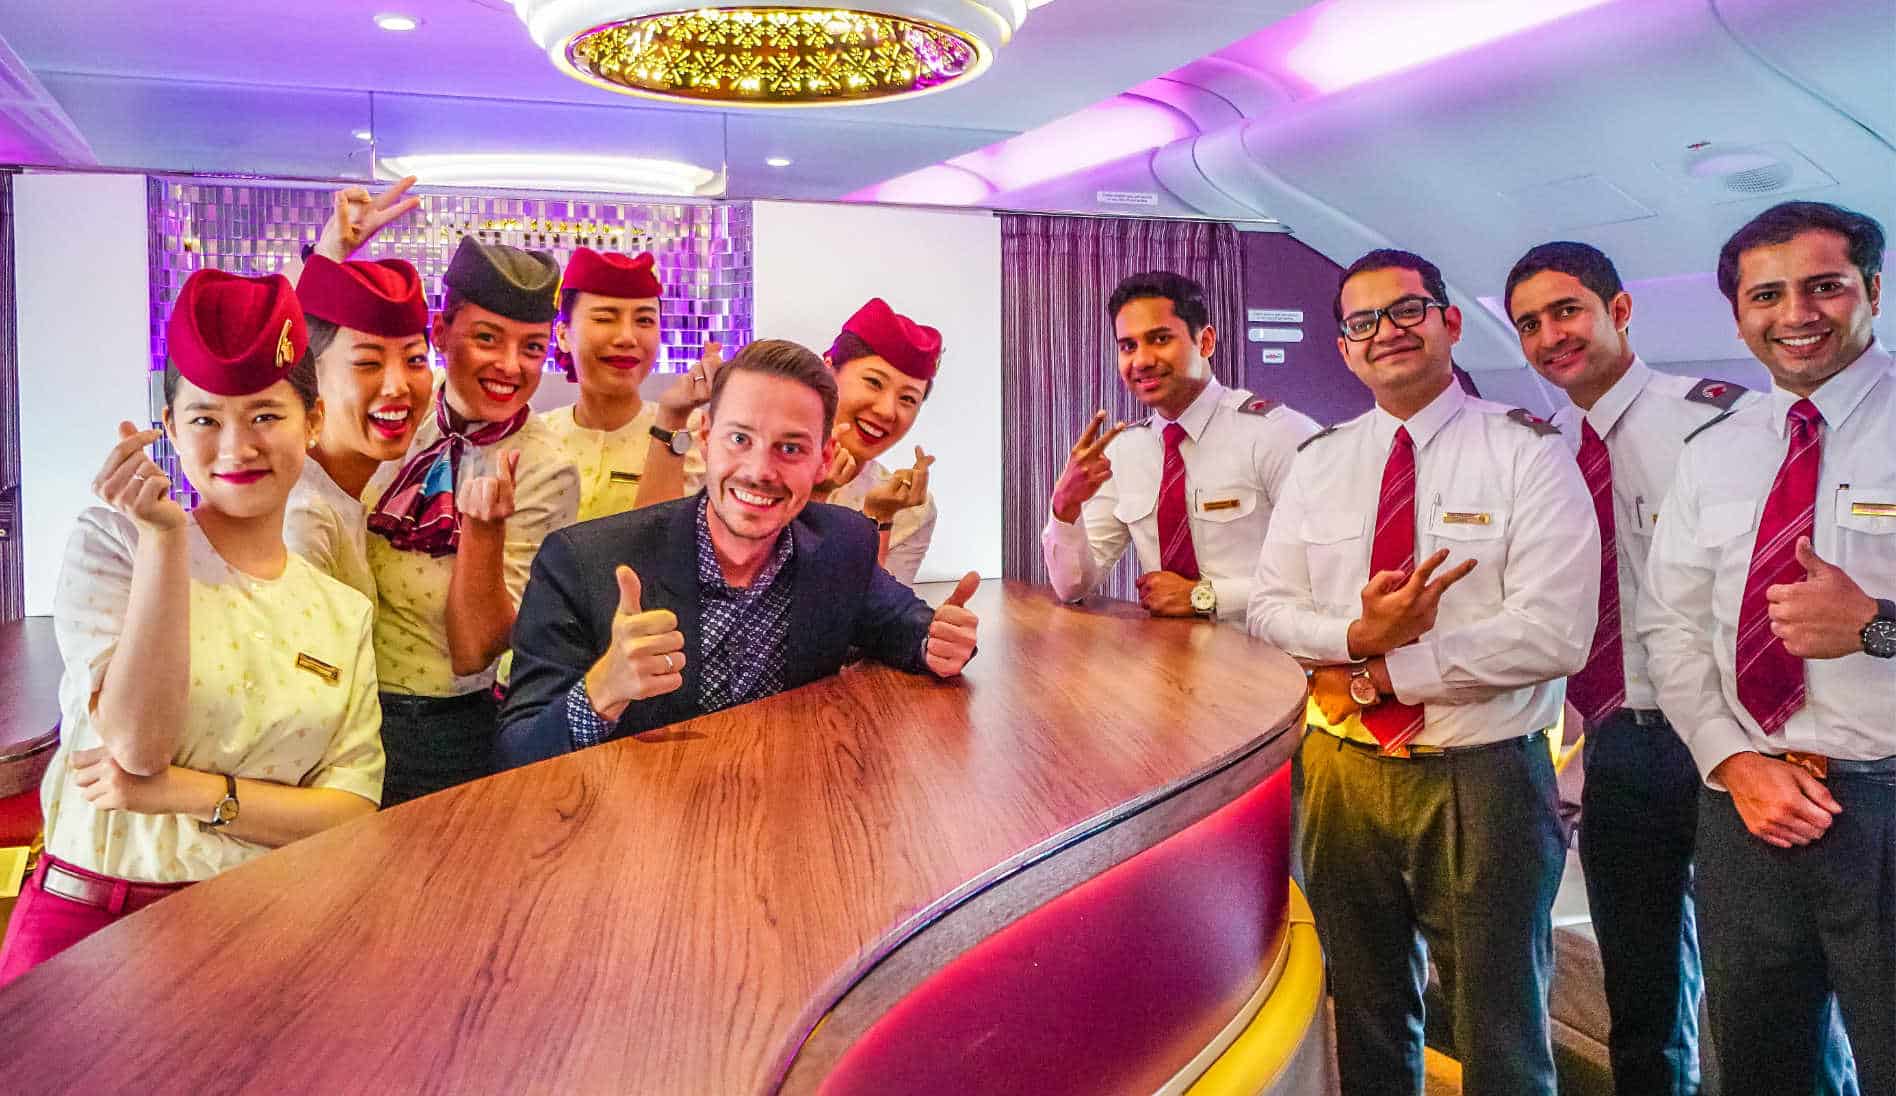 2018 07 07 Qatar A380 Qatar Airways First Class